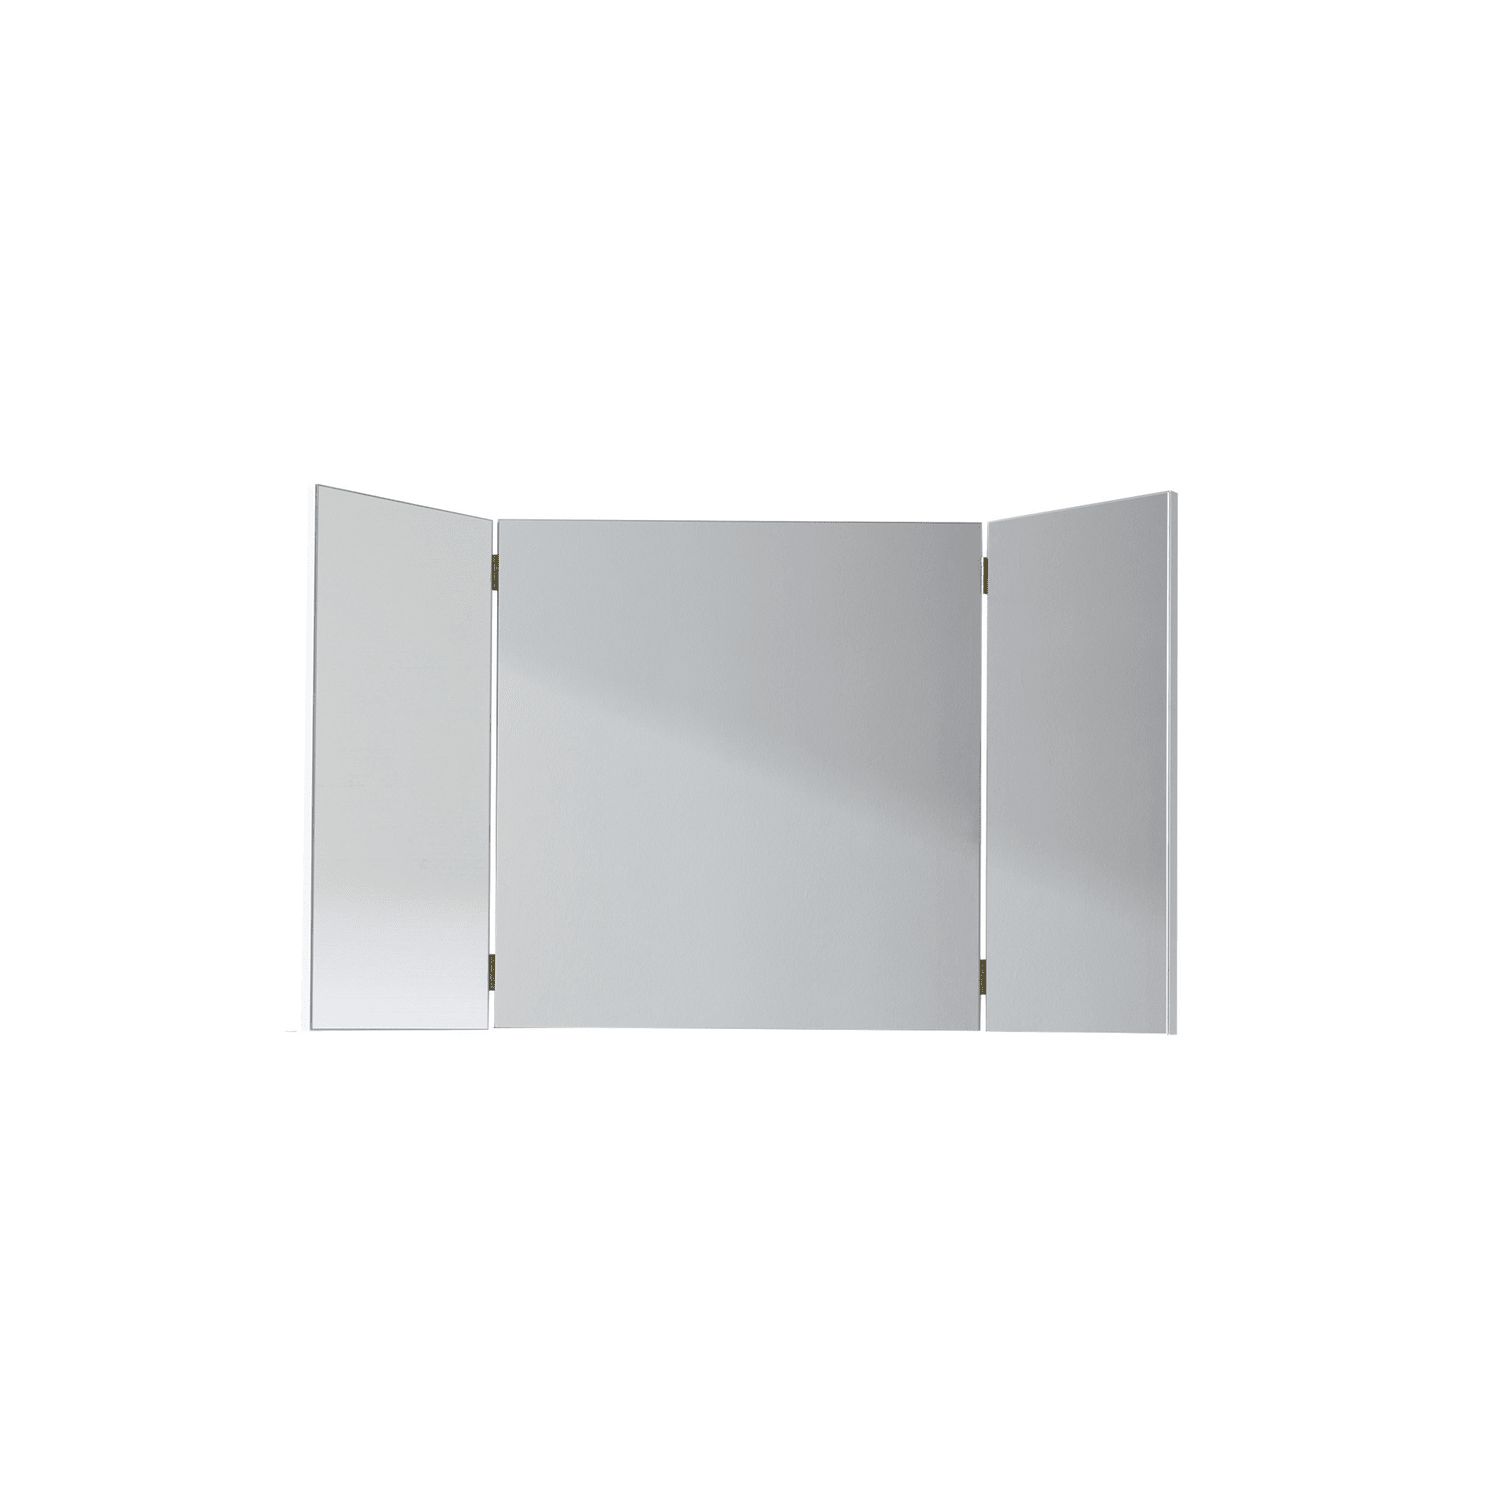 Billede af Garderobeskabspejl / spejl til sminkebord, hvid melamin/spejl glas, 100 x 67 x 15 cm